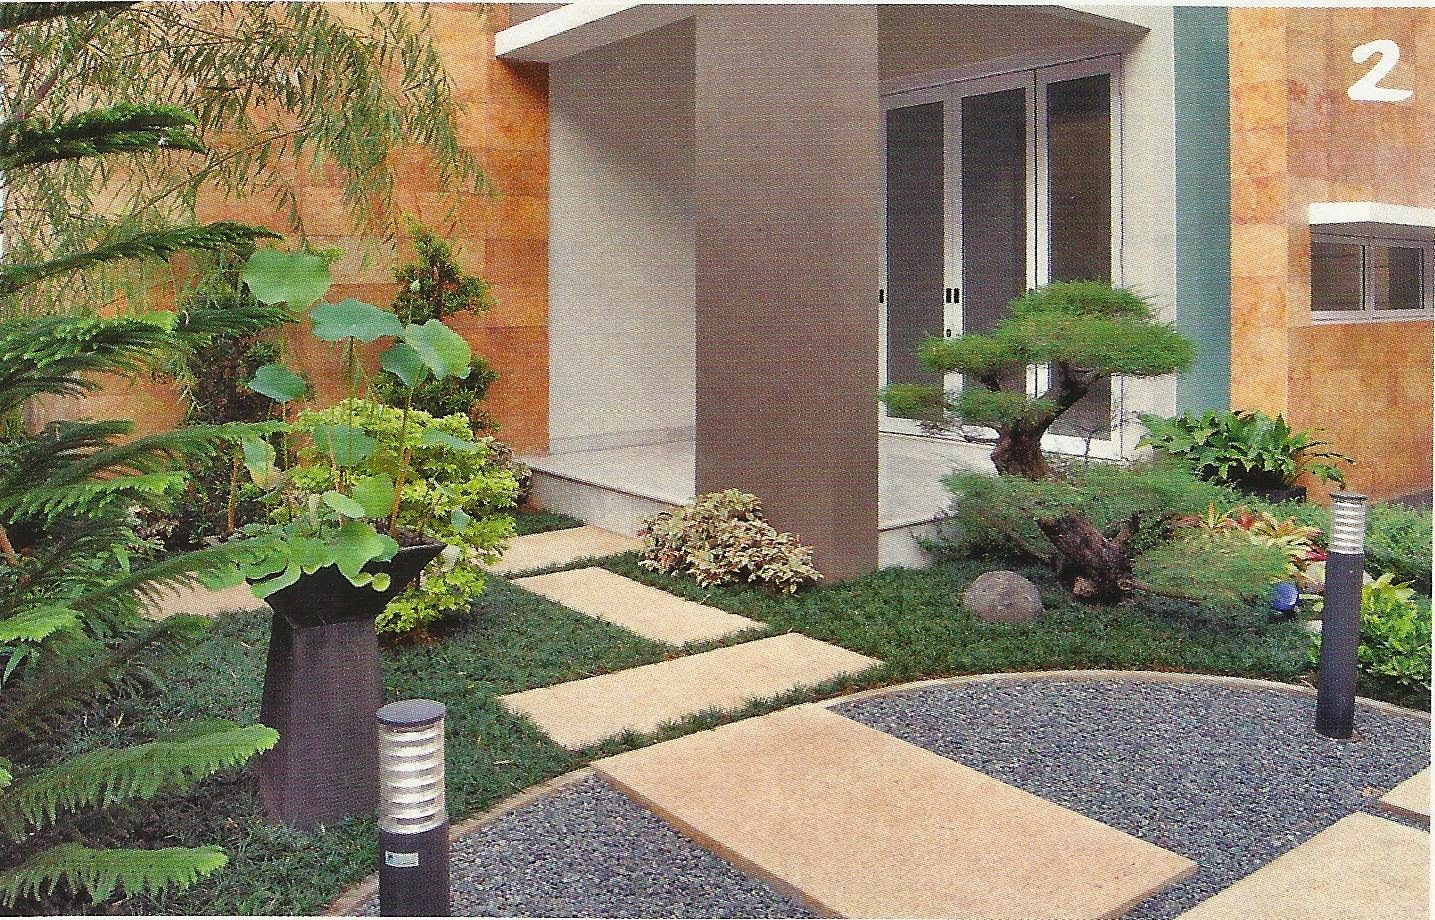 ... Desain Taman Kecil Depan Rumah Minimalis | Desain Taman Rumah Terbaru